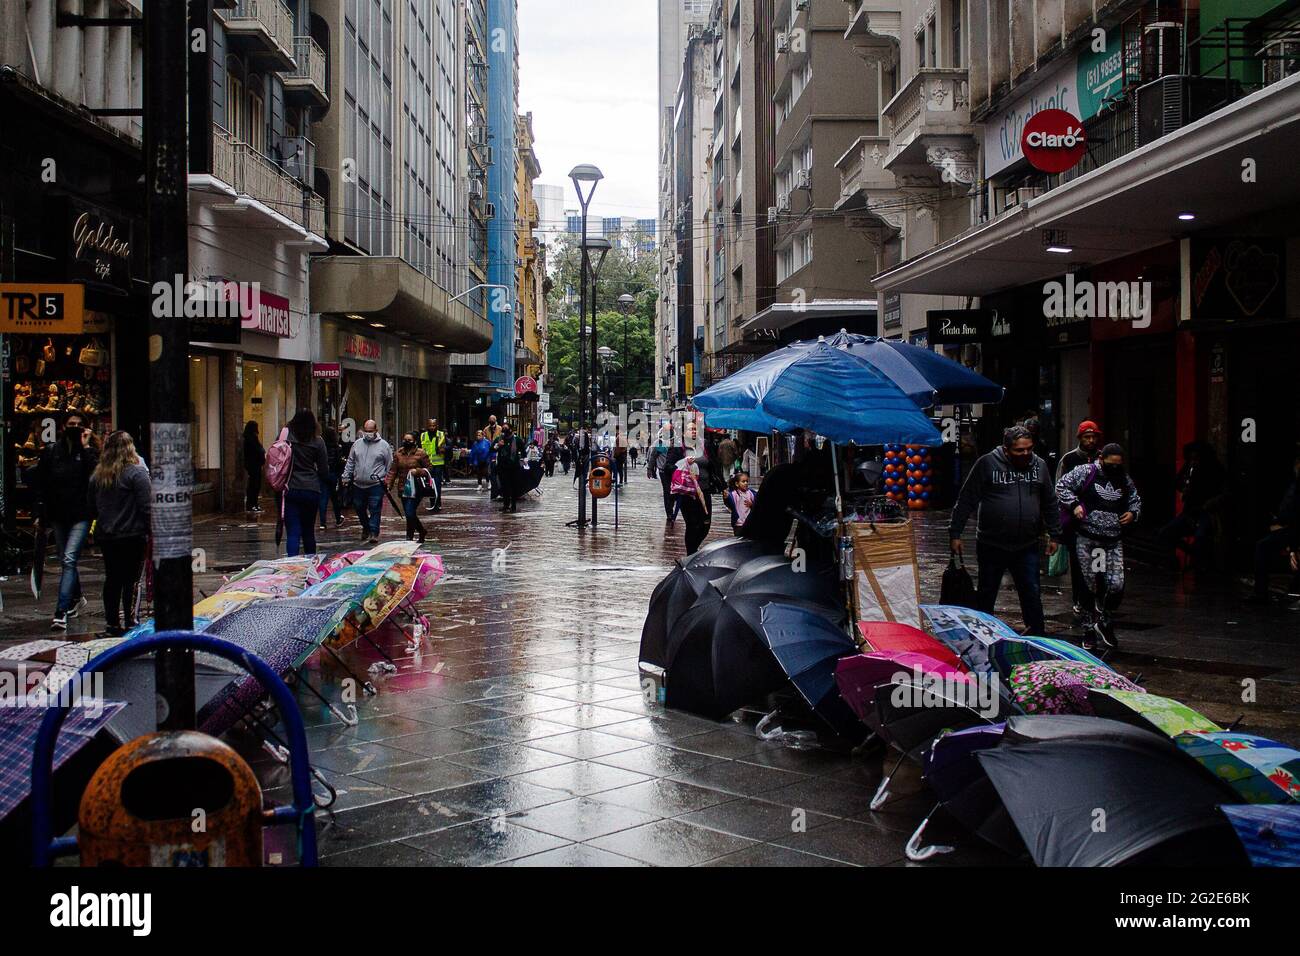 Porto algues, Rio Grande do Sul, Brasilien. Juni 2021. (INT) Wetter in Porto.  Fußgänger stehen am Donnerstag (10) inmitten der Covid-19-Pandemie einem  regnerischen und kalten Tag im historischen Zentrum von Porto Alegre,